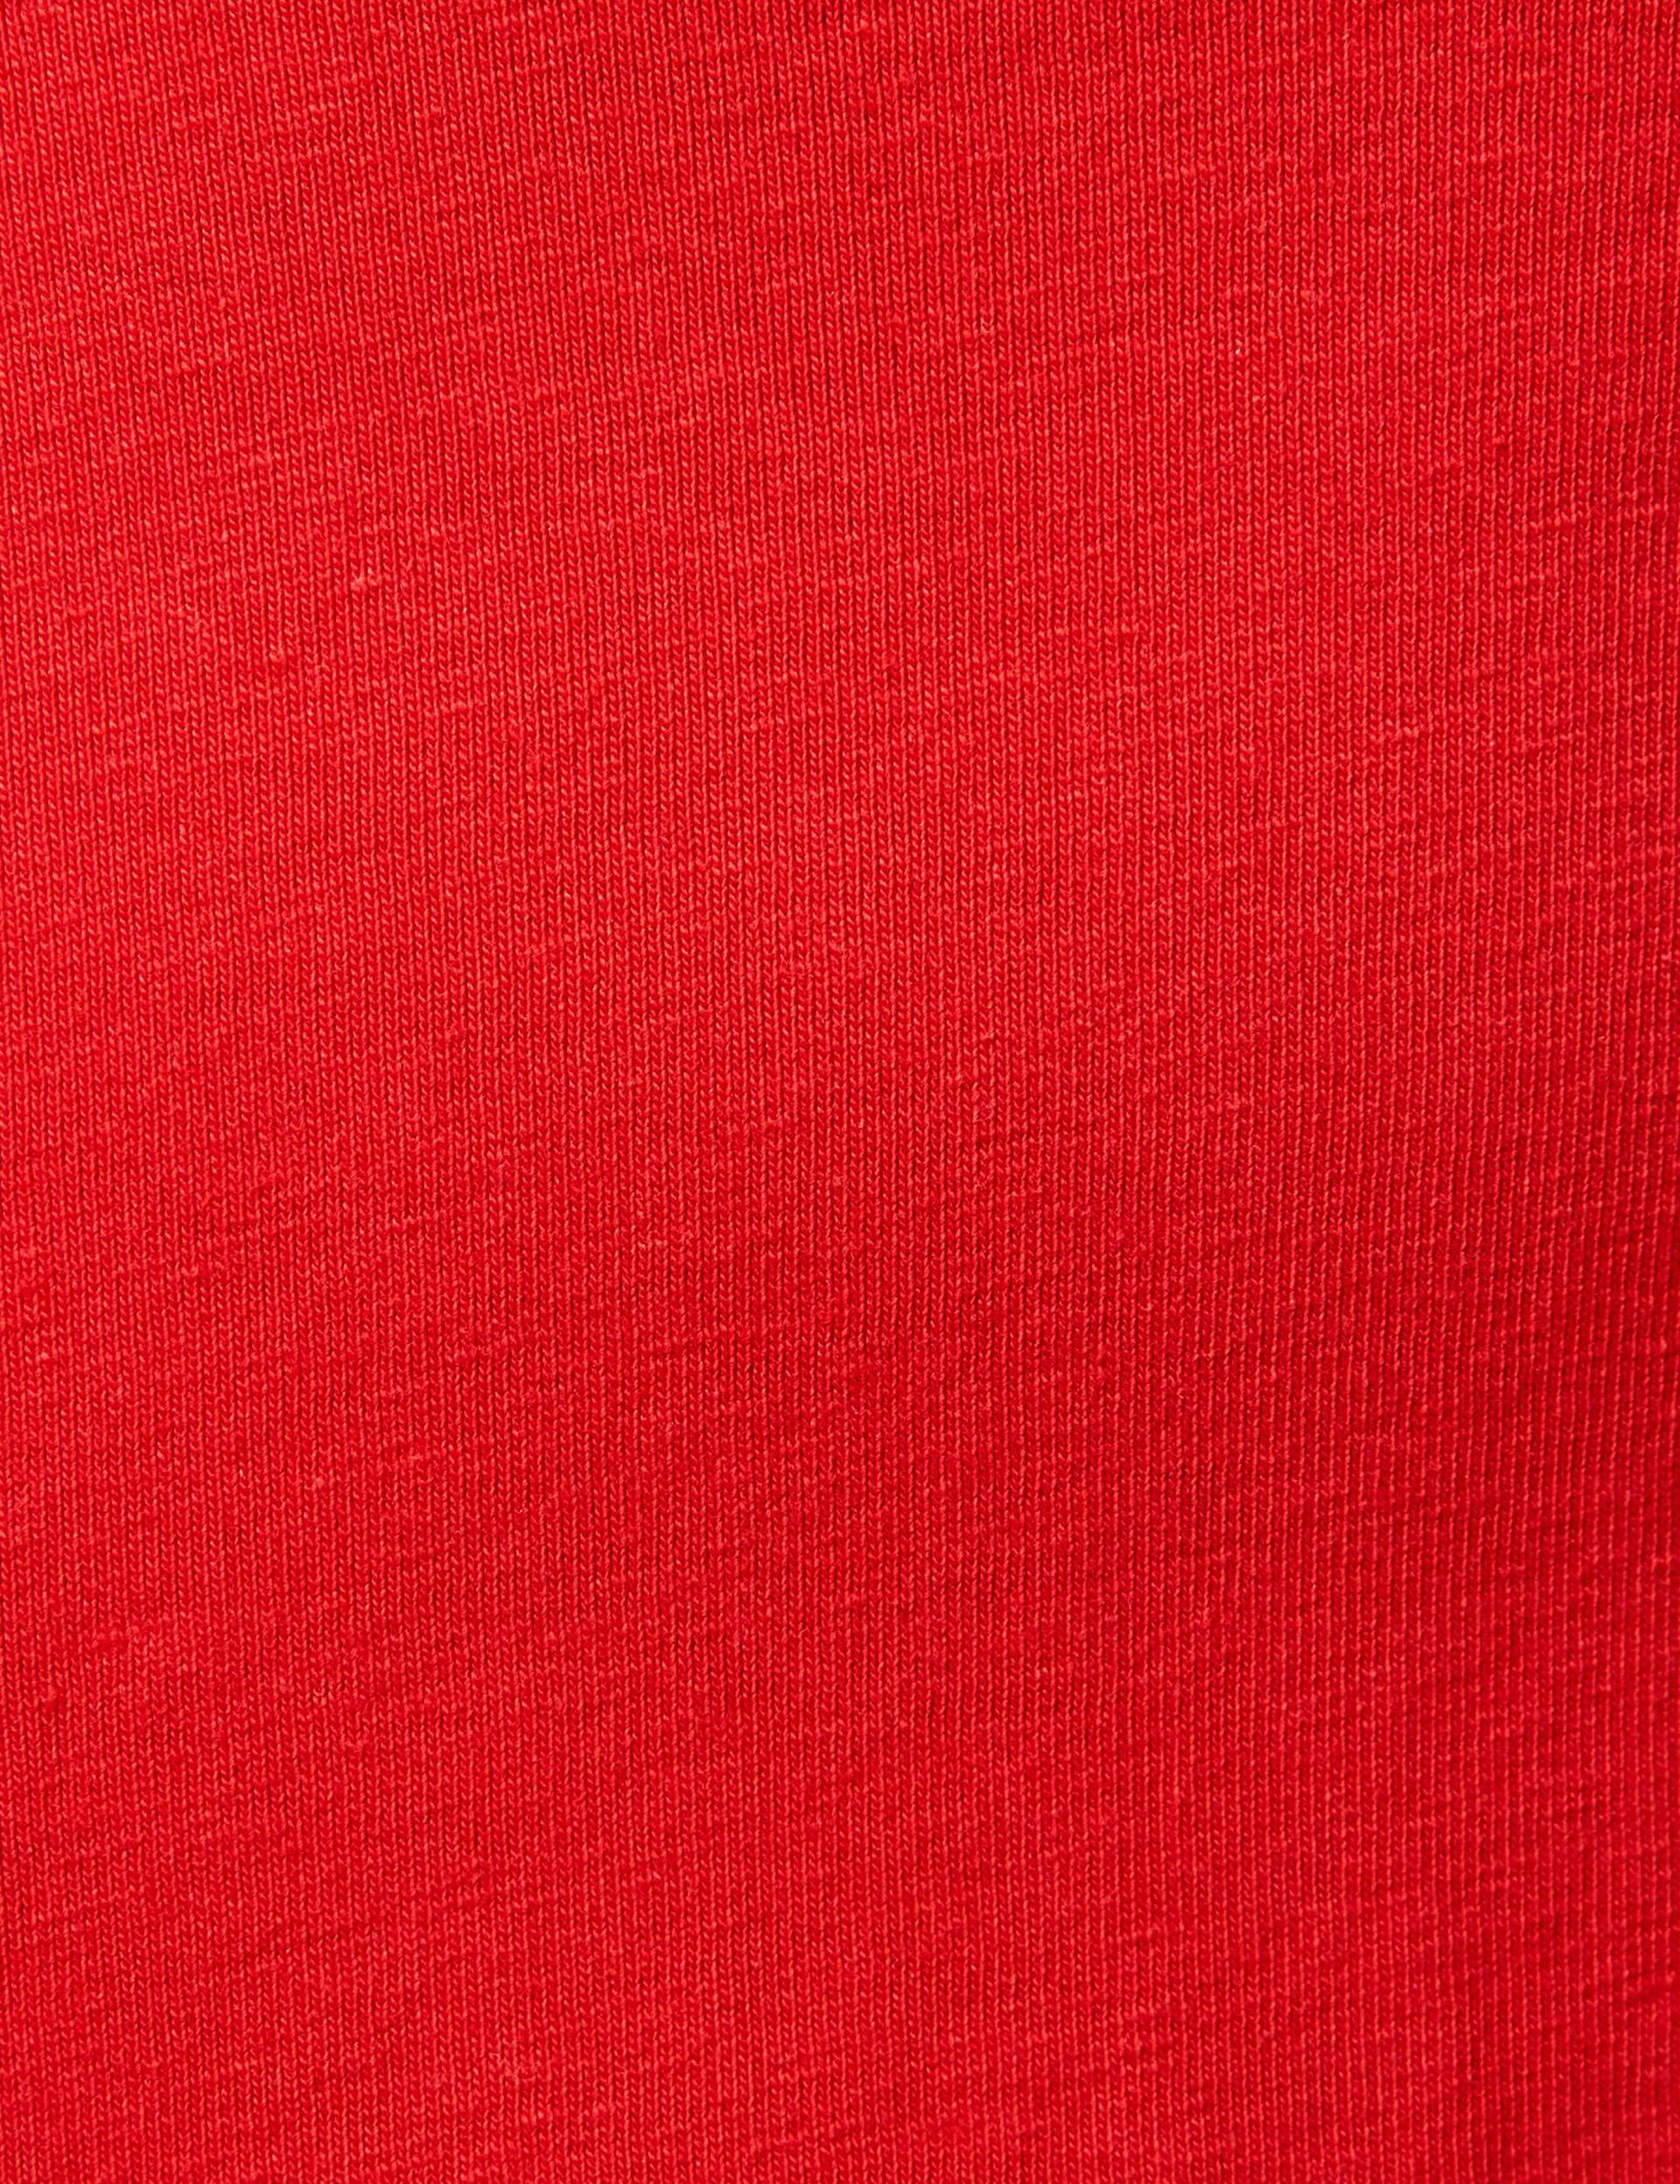 Robe rouge à bretelles larges